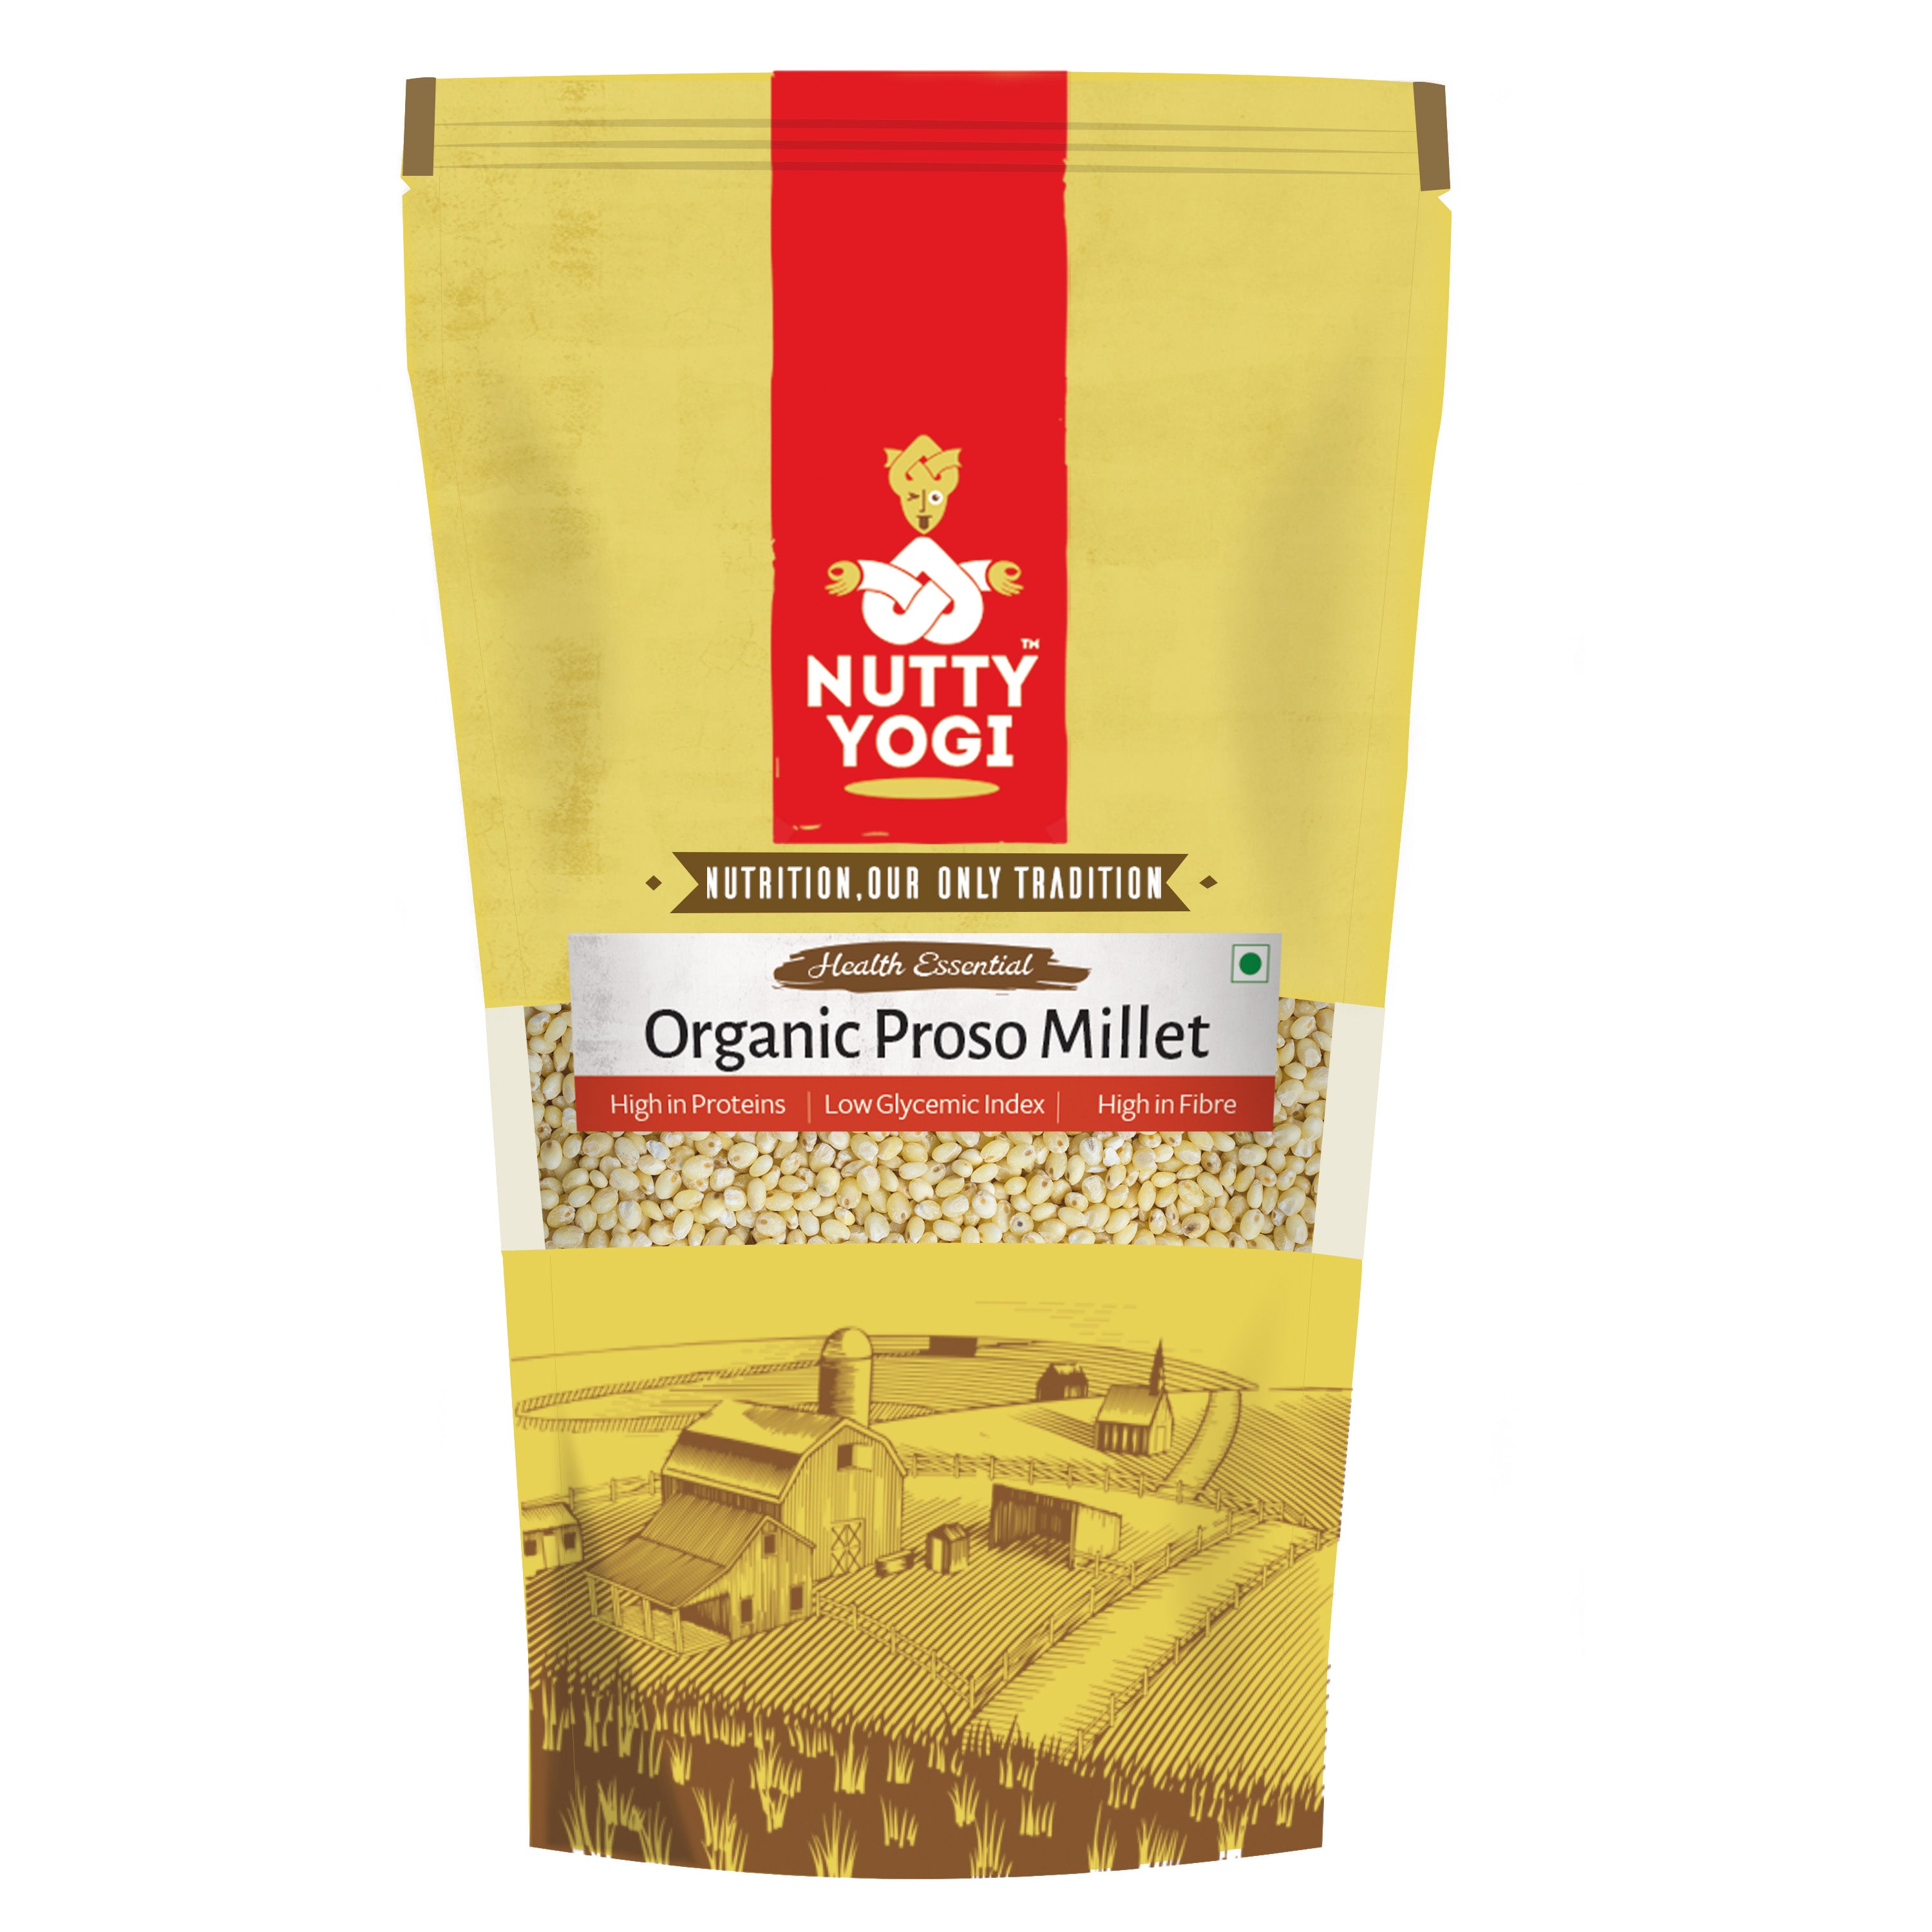 Nutty Yogi Organic Proso Millet / Barri